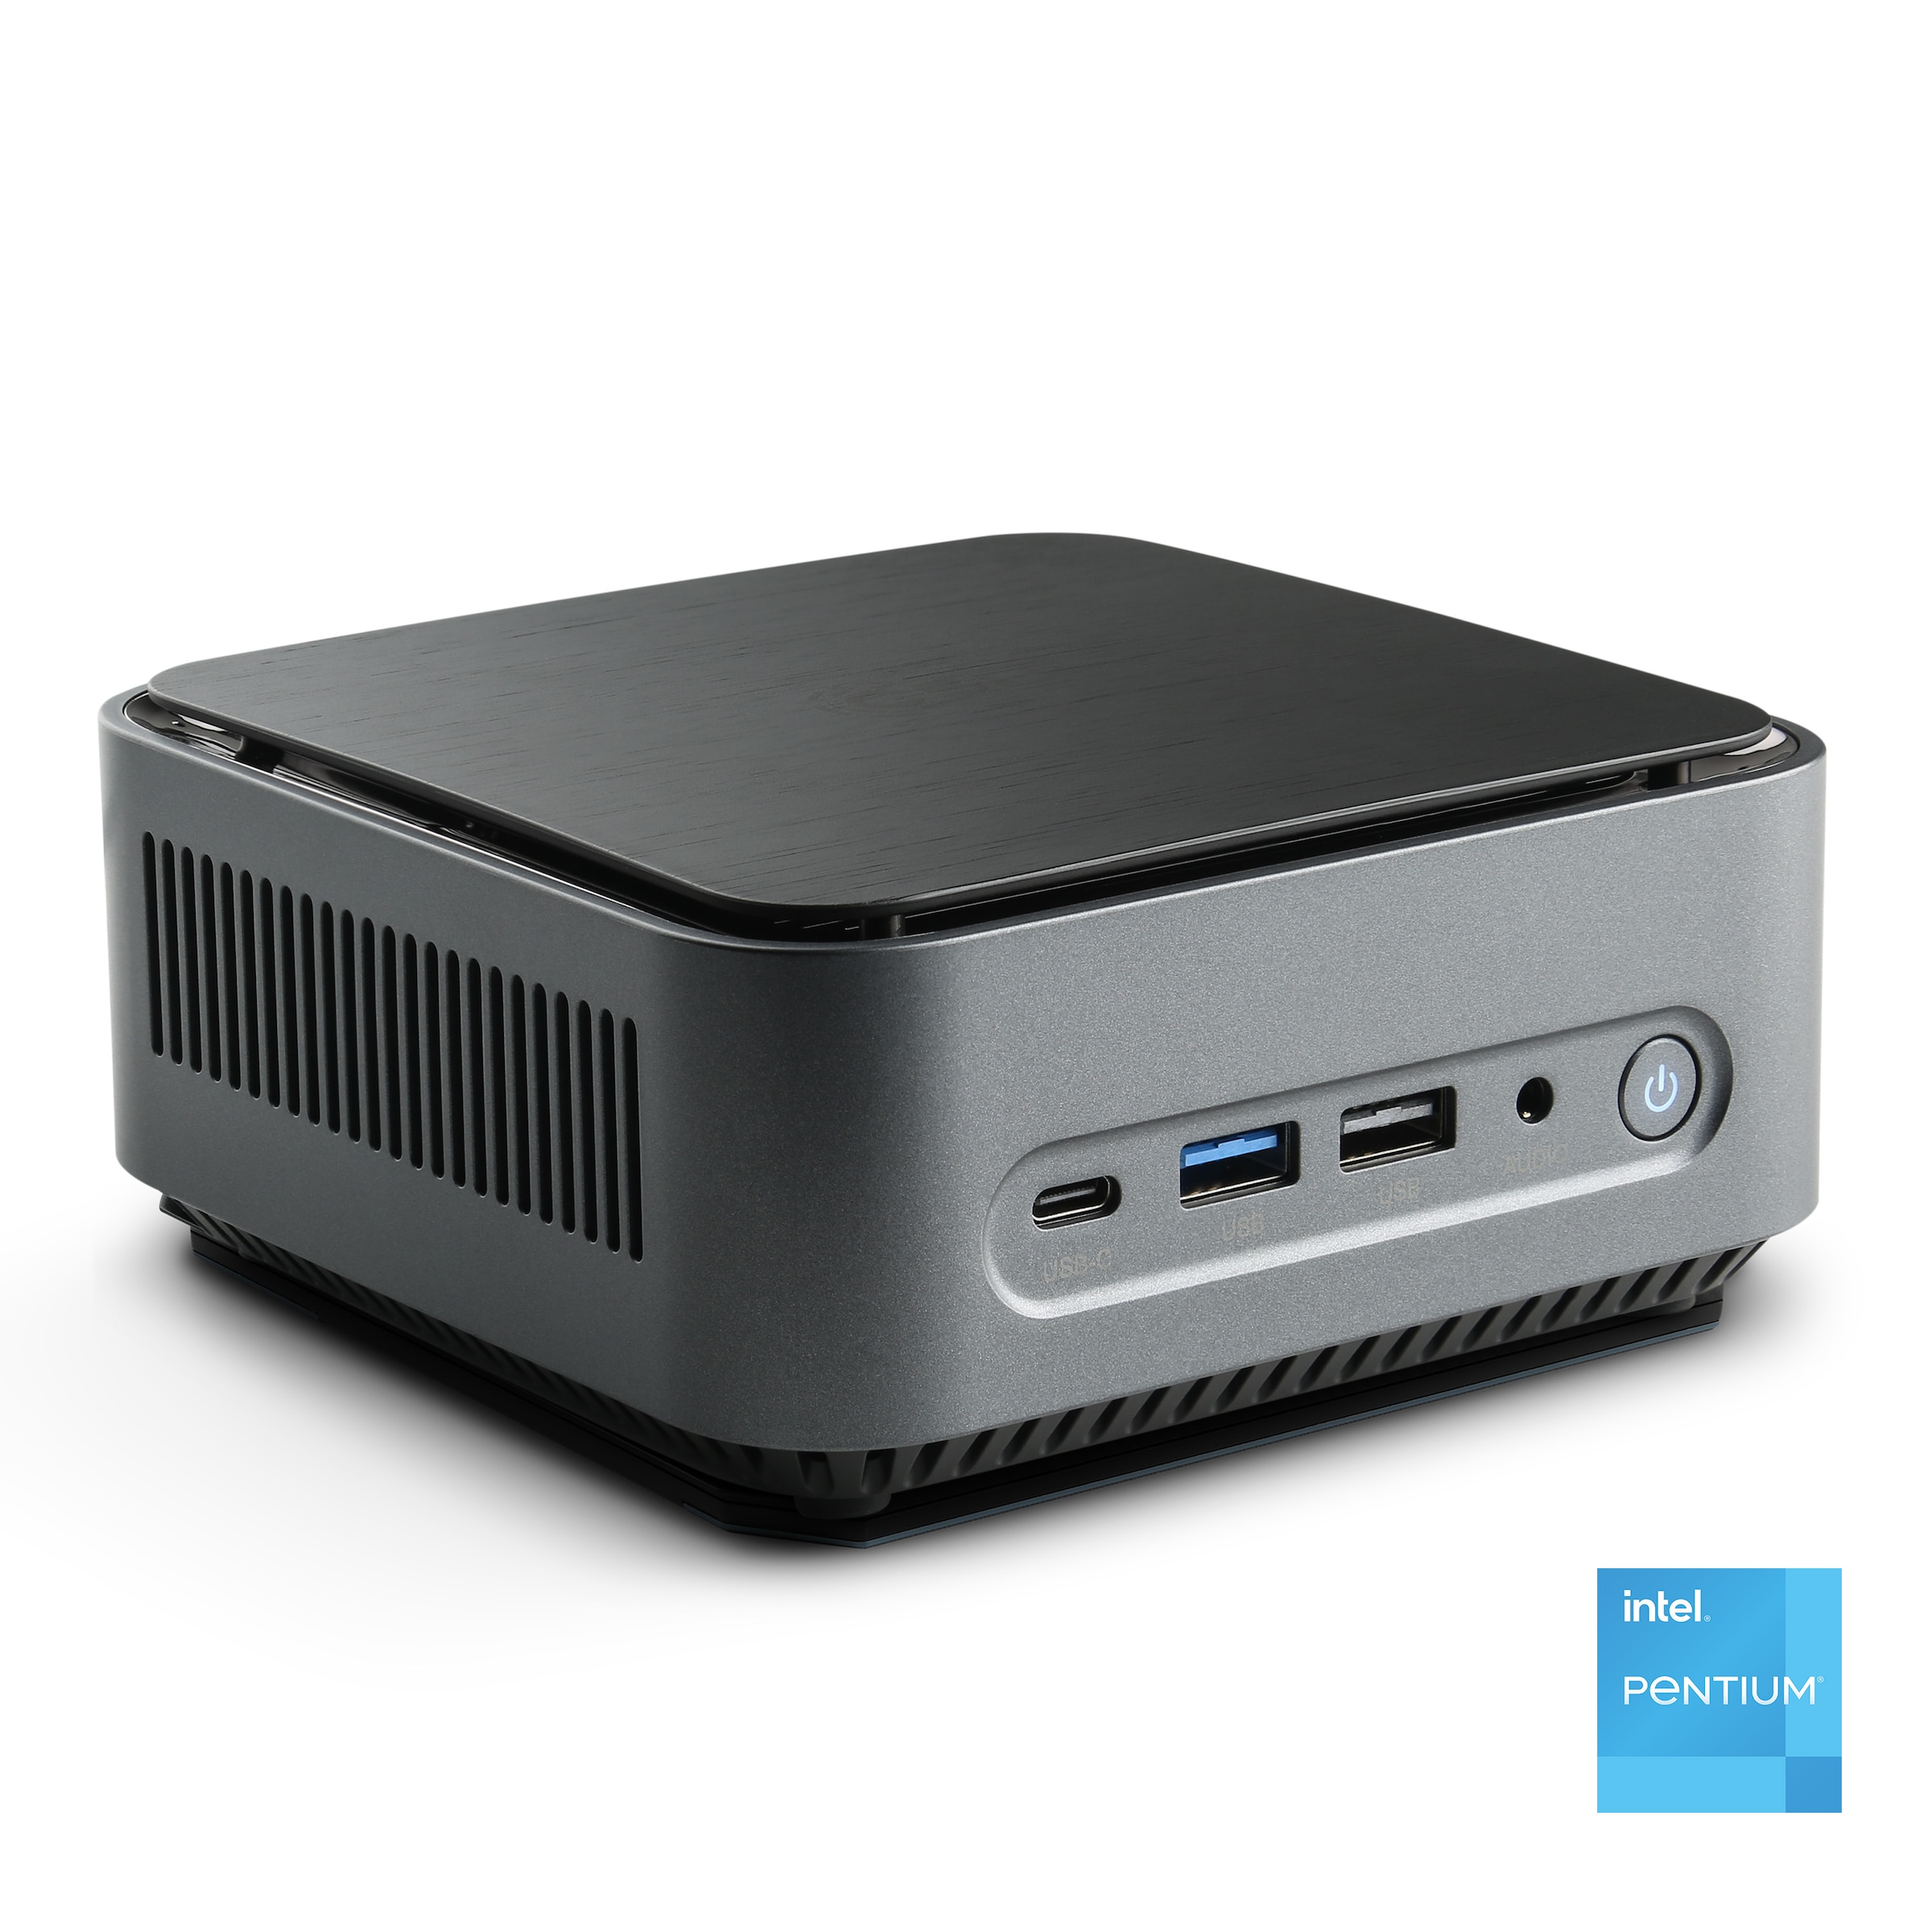 CSL Mini-PC »Narrow Box Premium / 32GB / 500 GB M.2 SSD / Win 11 Pro«